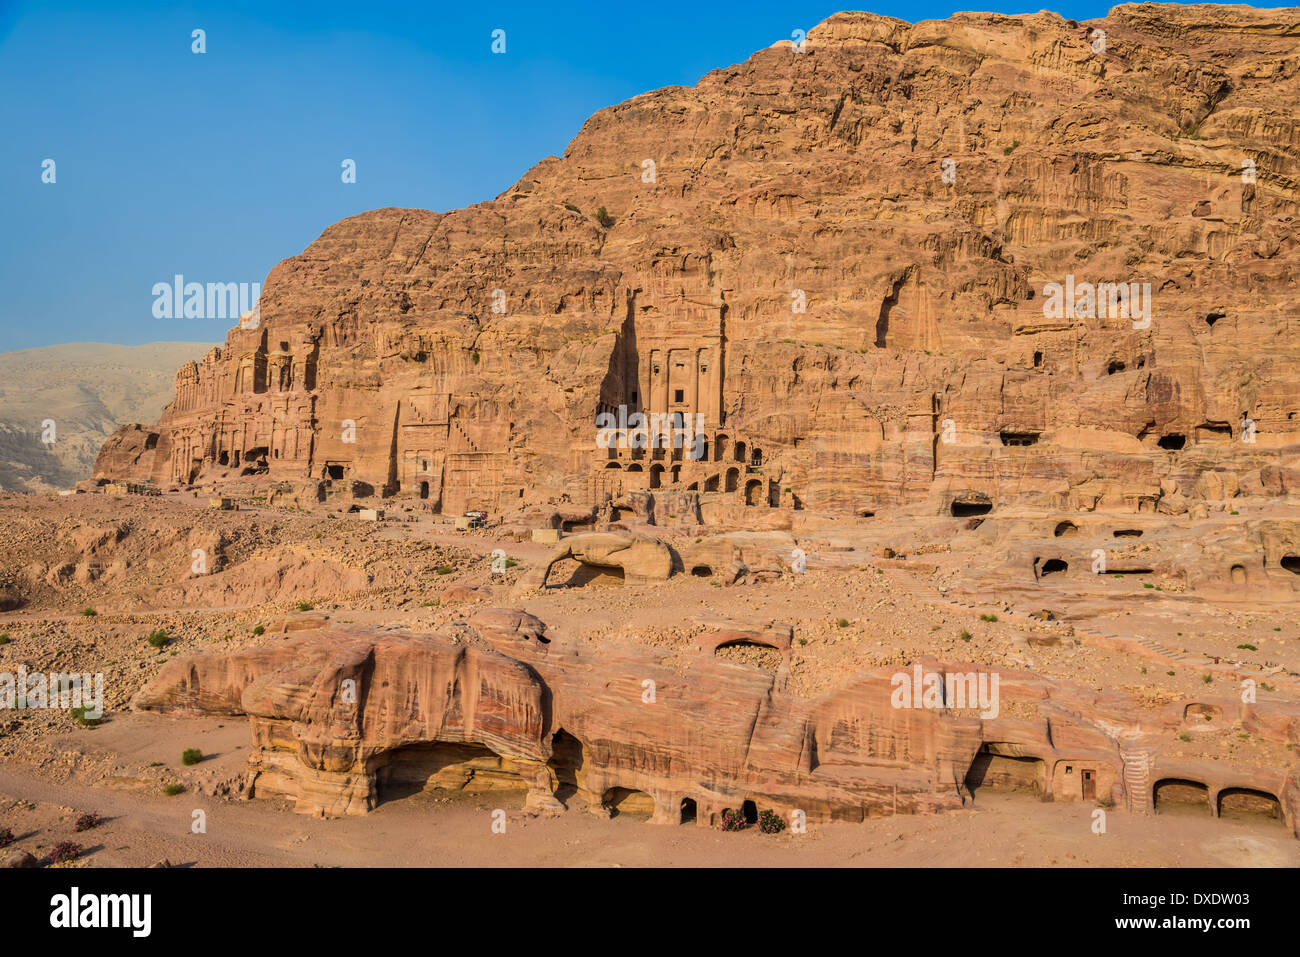 Tumbas reales en Nabateo Petra Jordania oriente medio Foto de stock